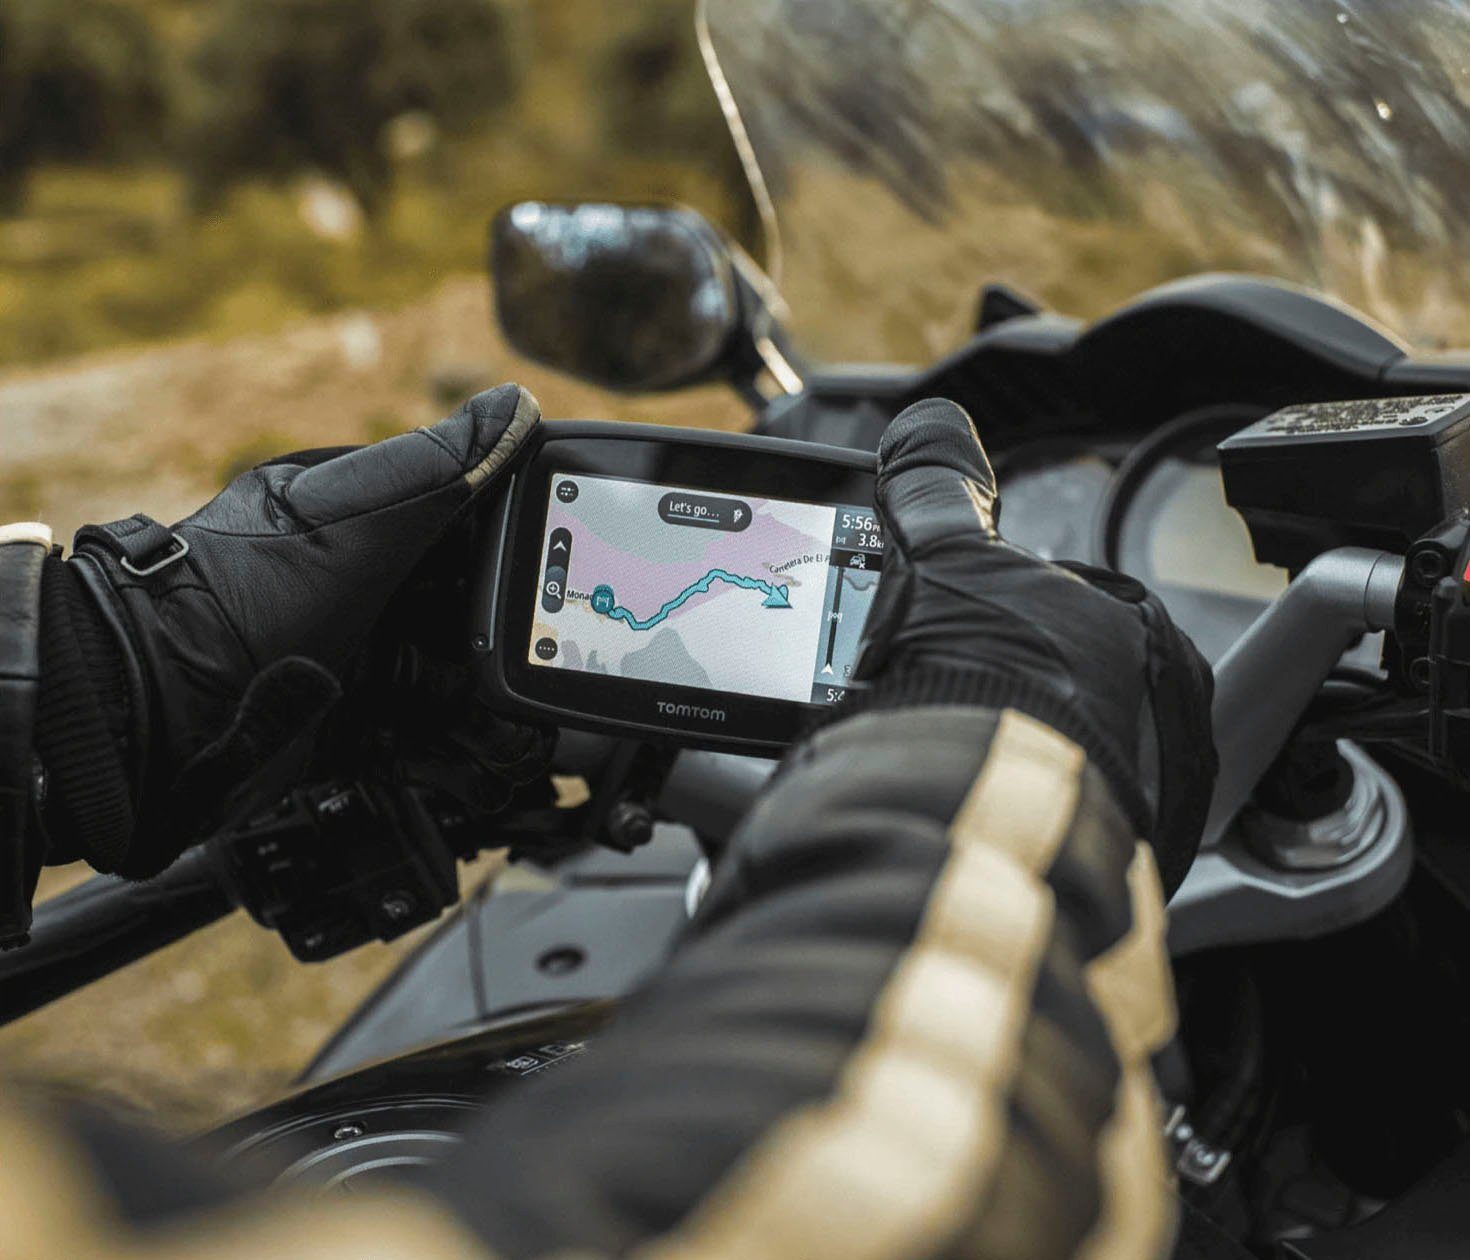 500 Rider TomTom Motorrad-Navigationsgerät